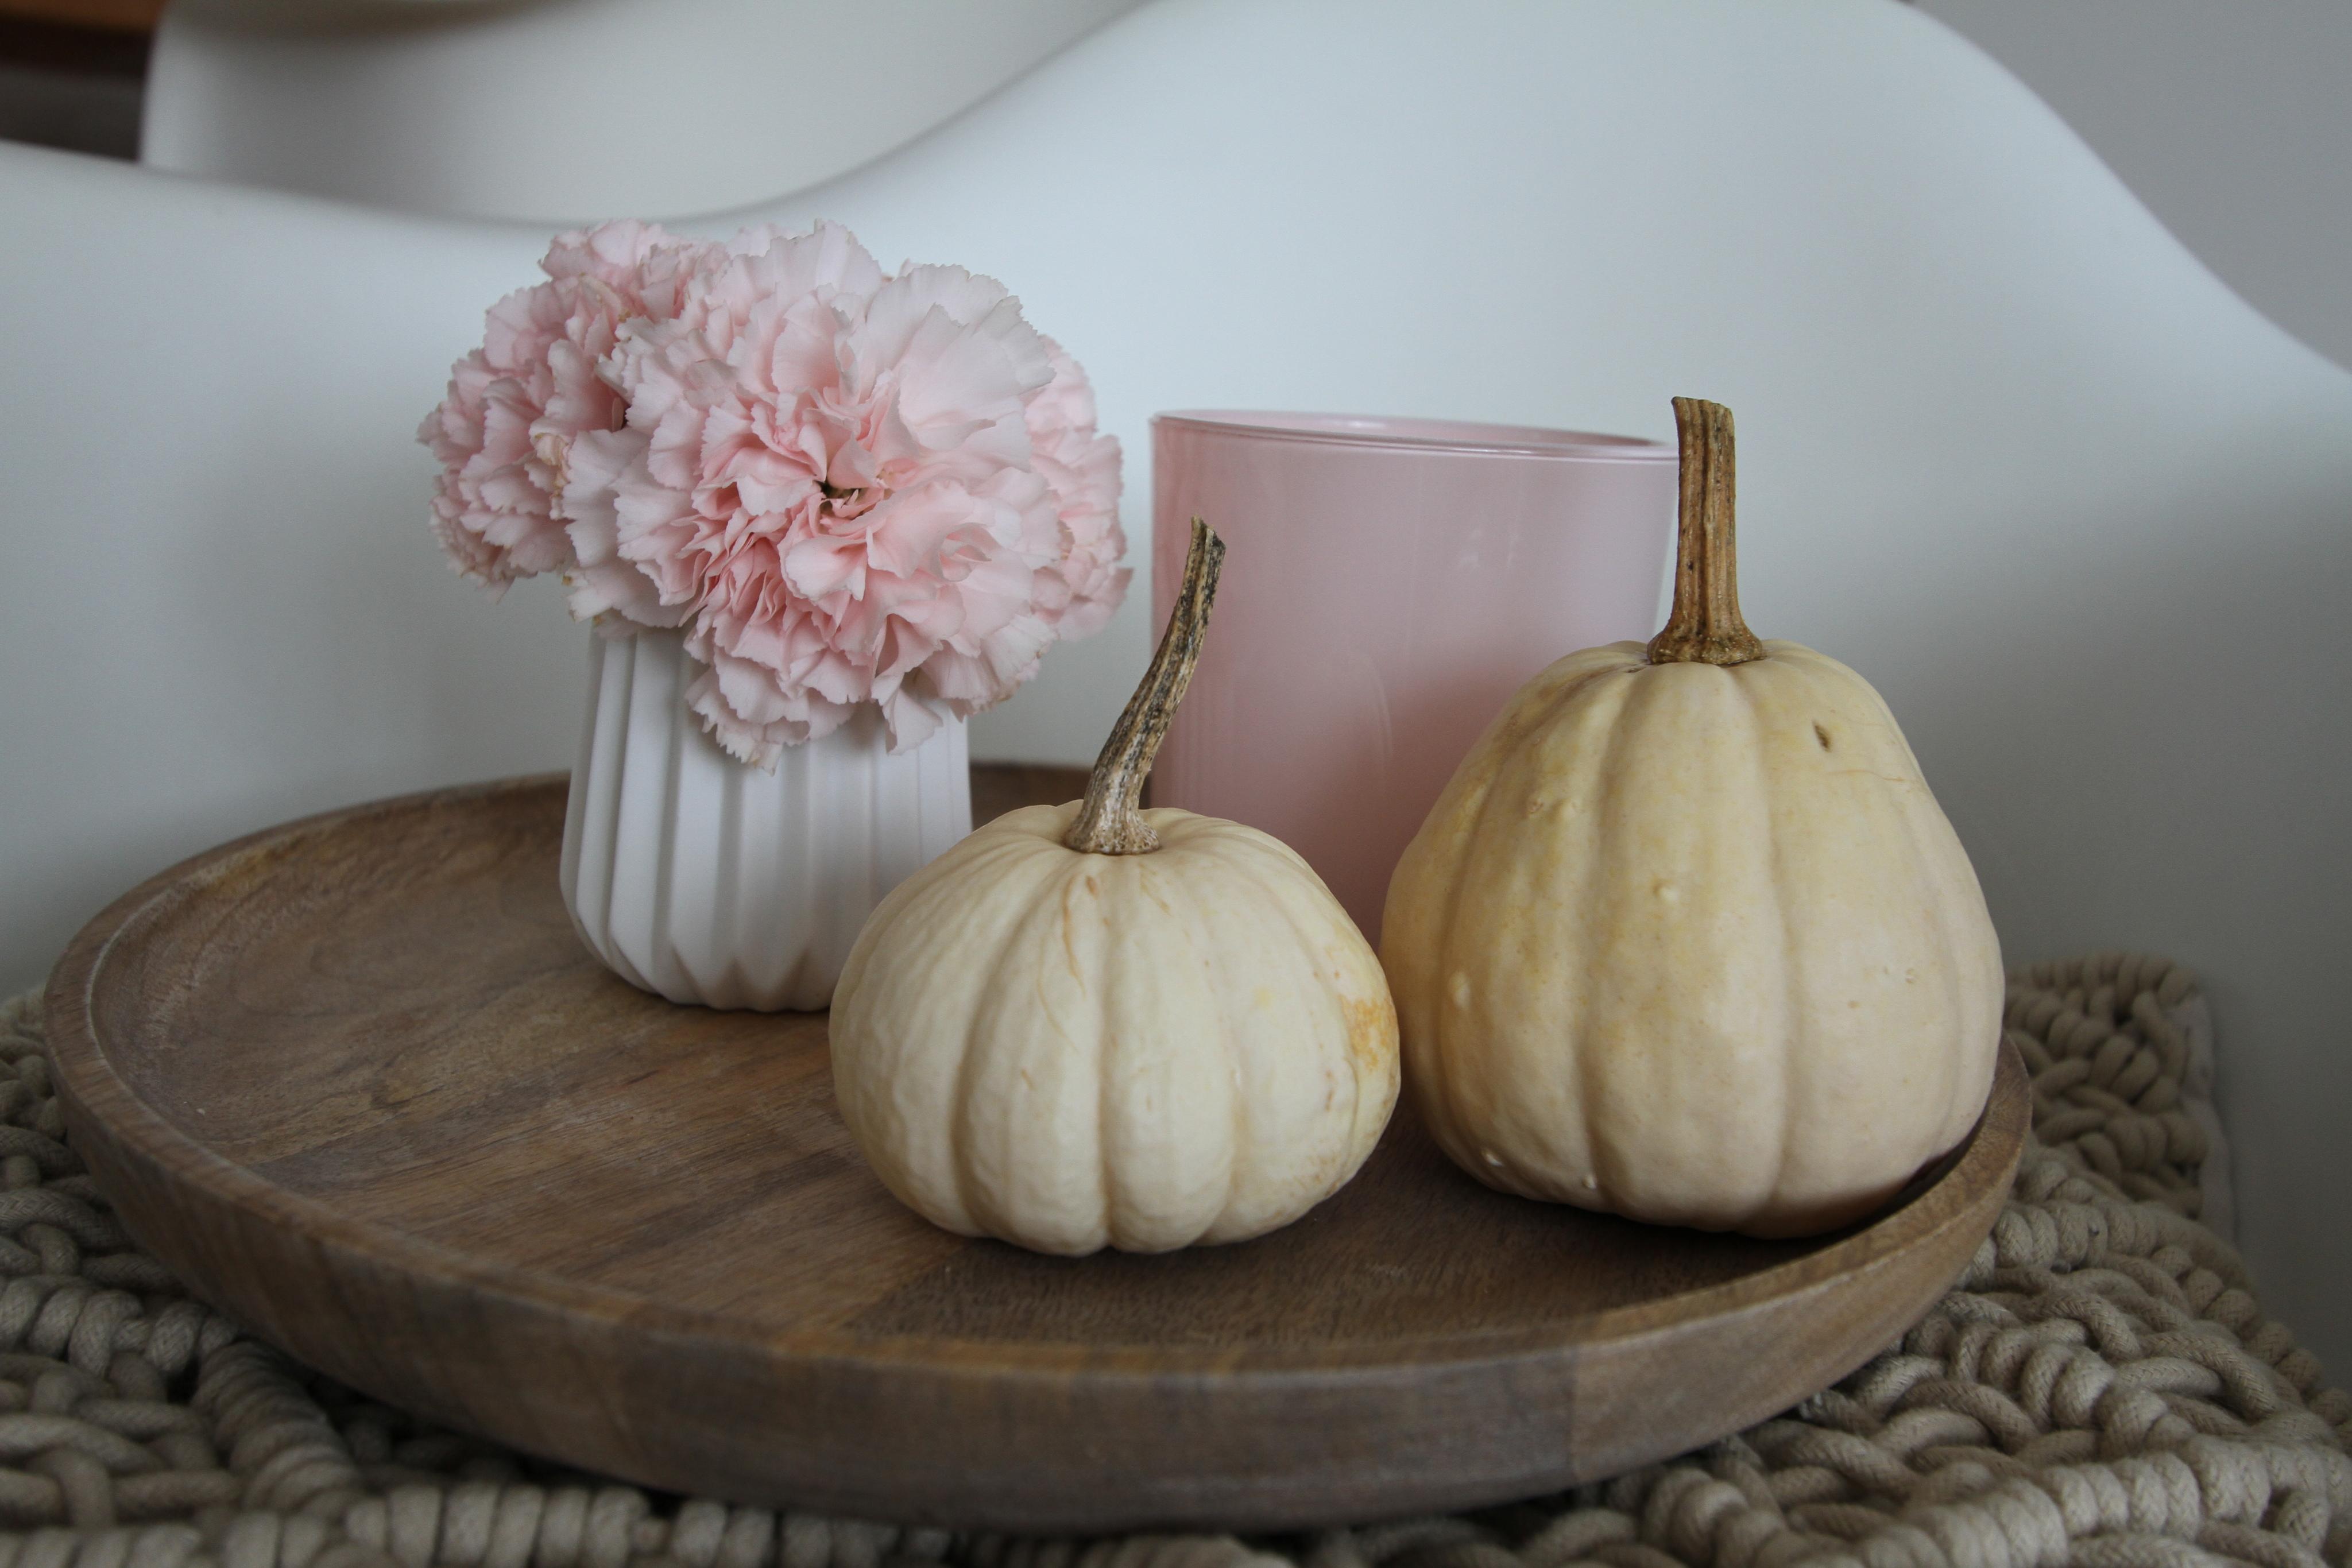 Herbst geht auch mit vornehmer Blässe - oder nicht!? #herbstmood #rosa #autumn #herbst #kürbisse #kürbis #pumpkin